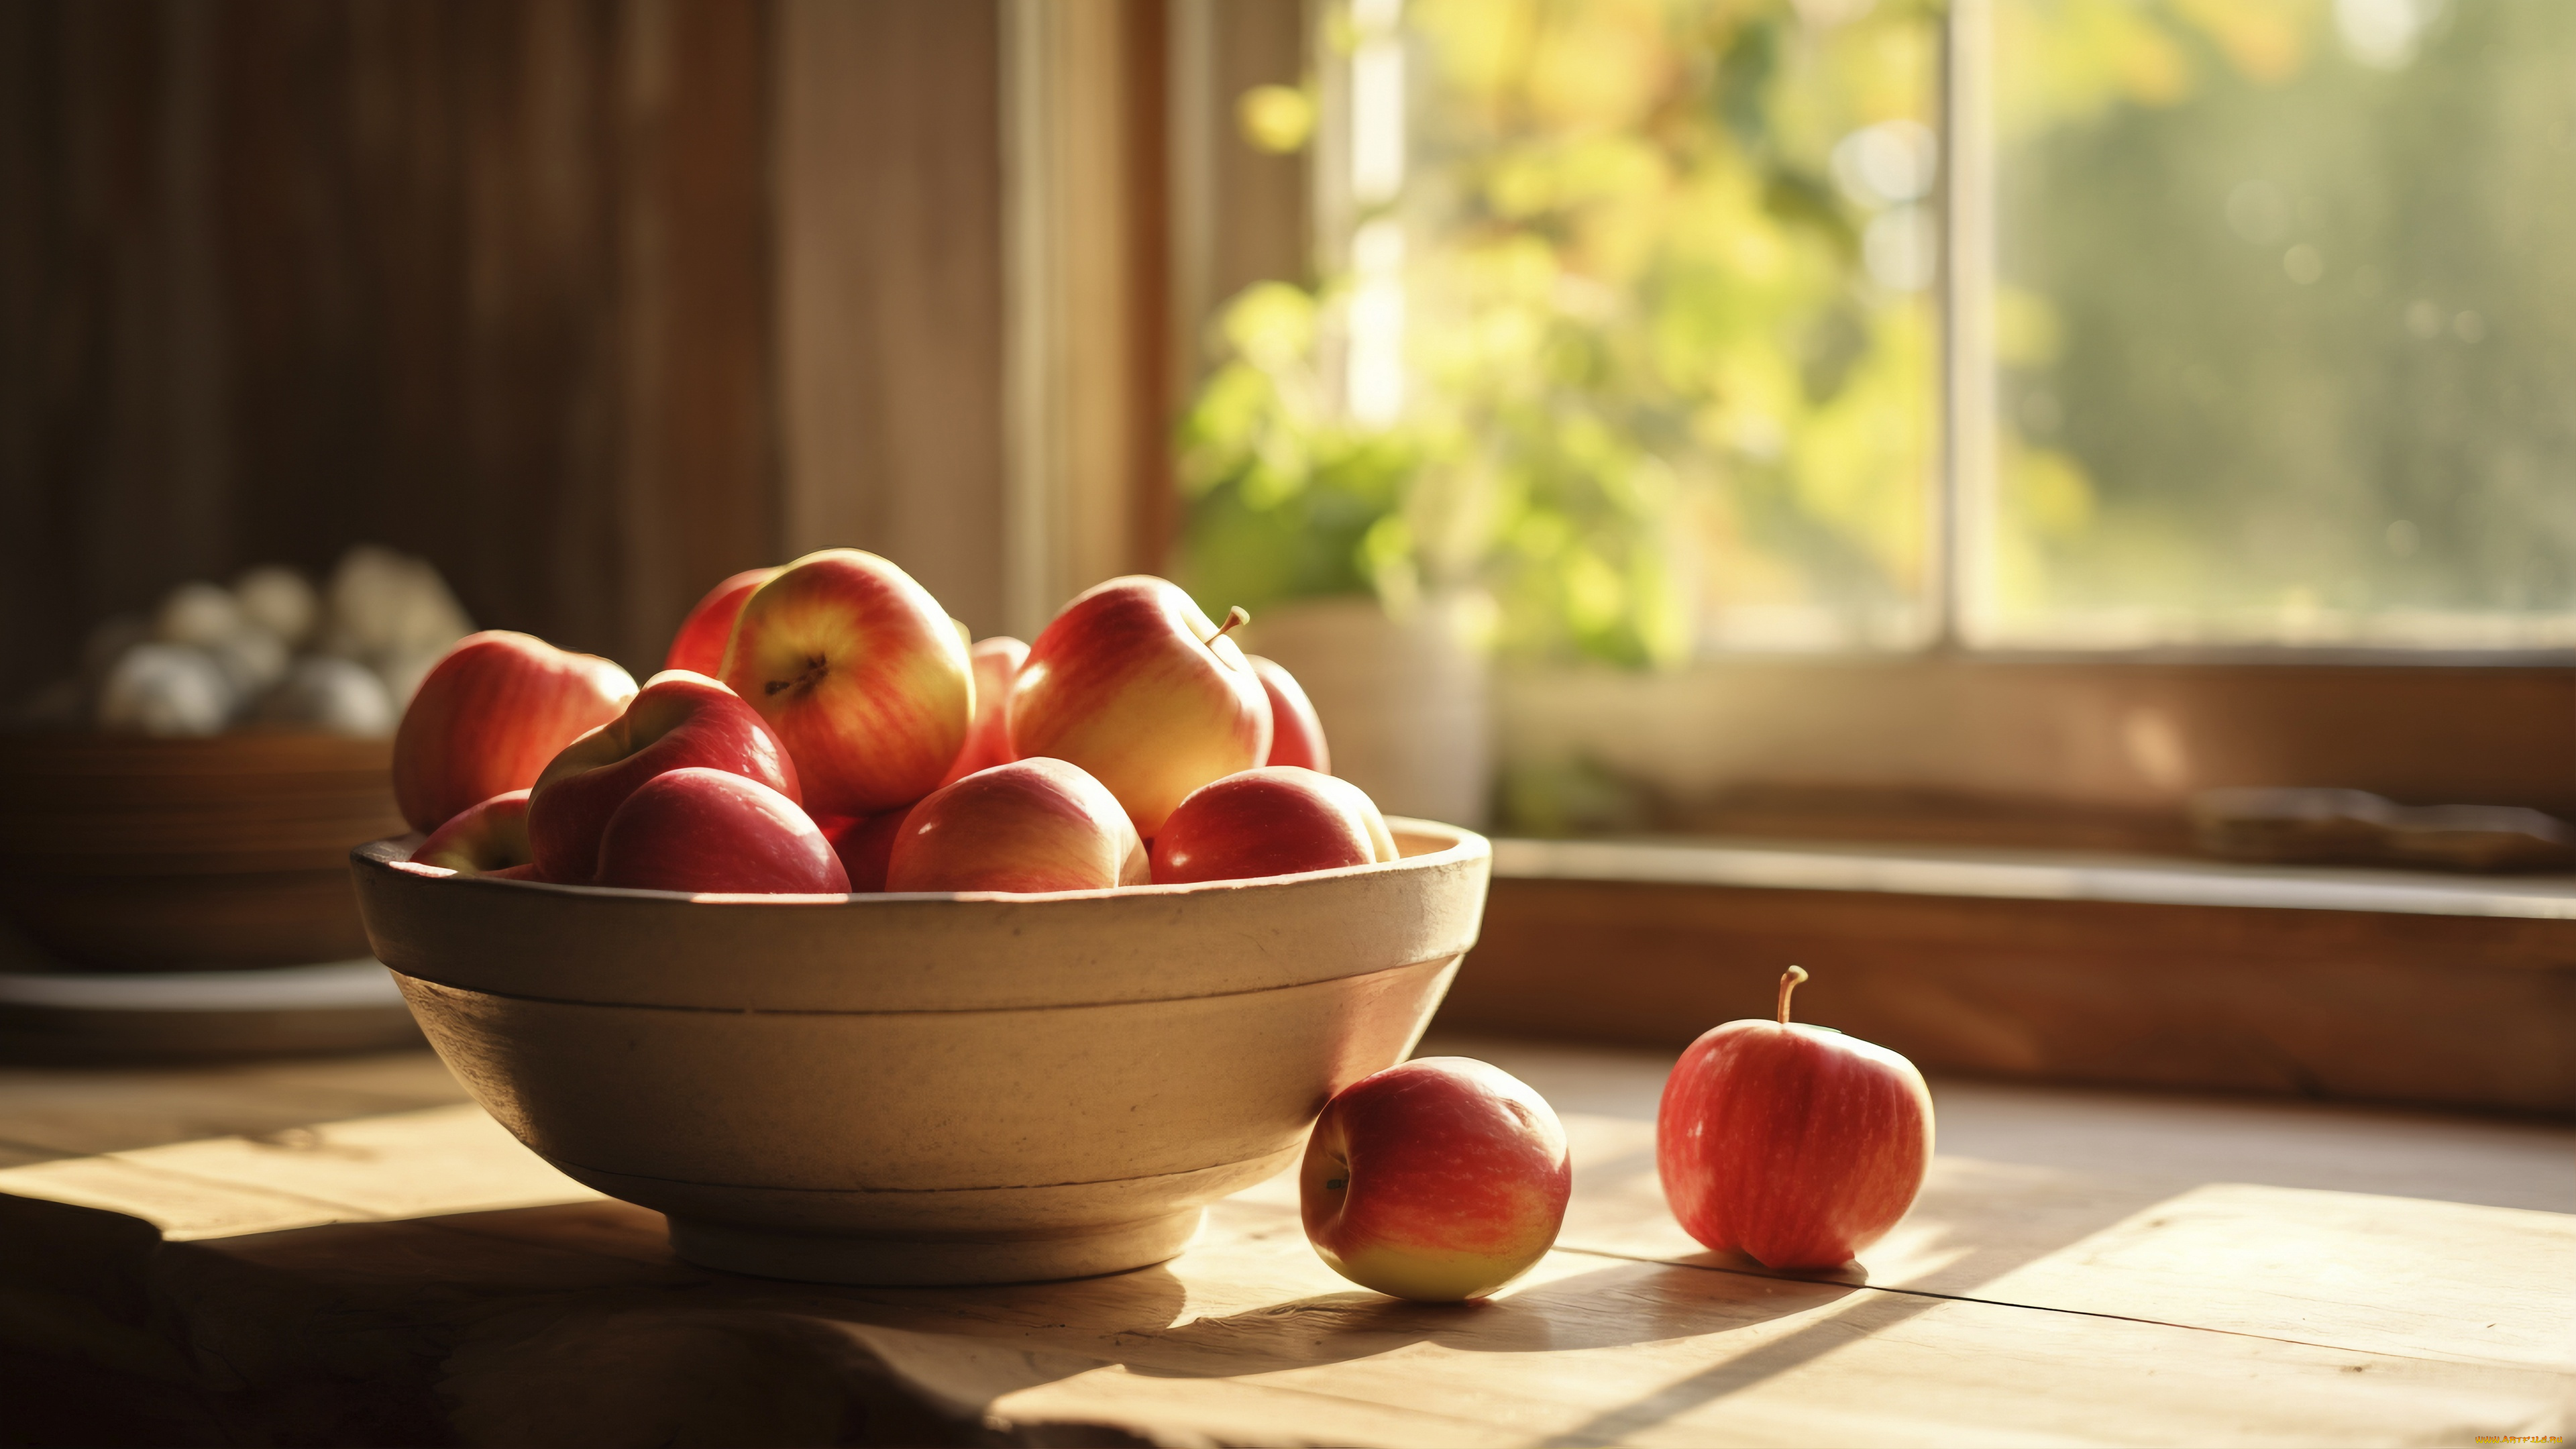 рисованное, еда, свет, стол, яблоки, яблоко, окно, кухня, миска